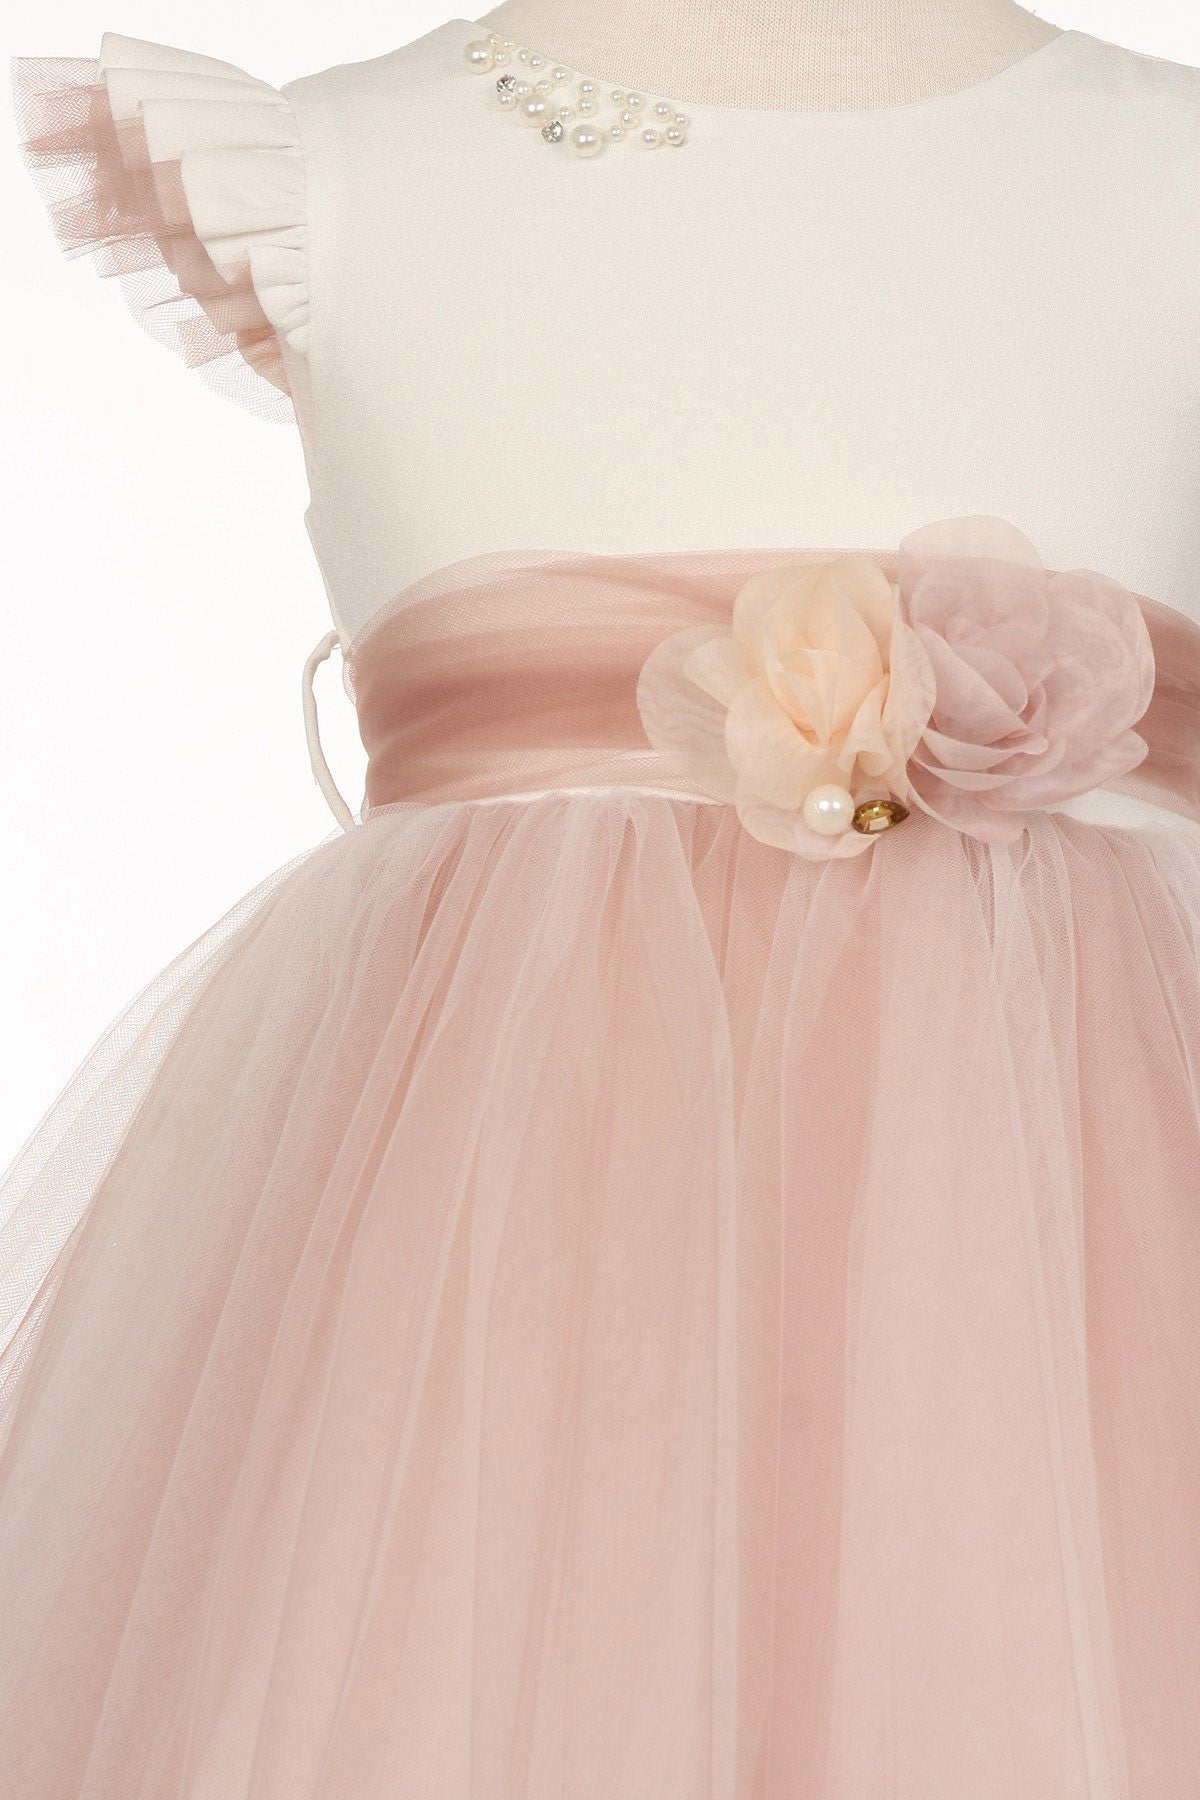 Blush Girl Dress,Girl Dress,Blush Dress, Blush Dress, Flower Girl, Wedding Flower Girl Dress, Blush Teen Dress